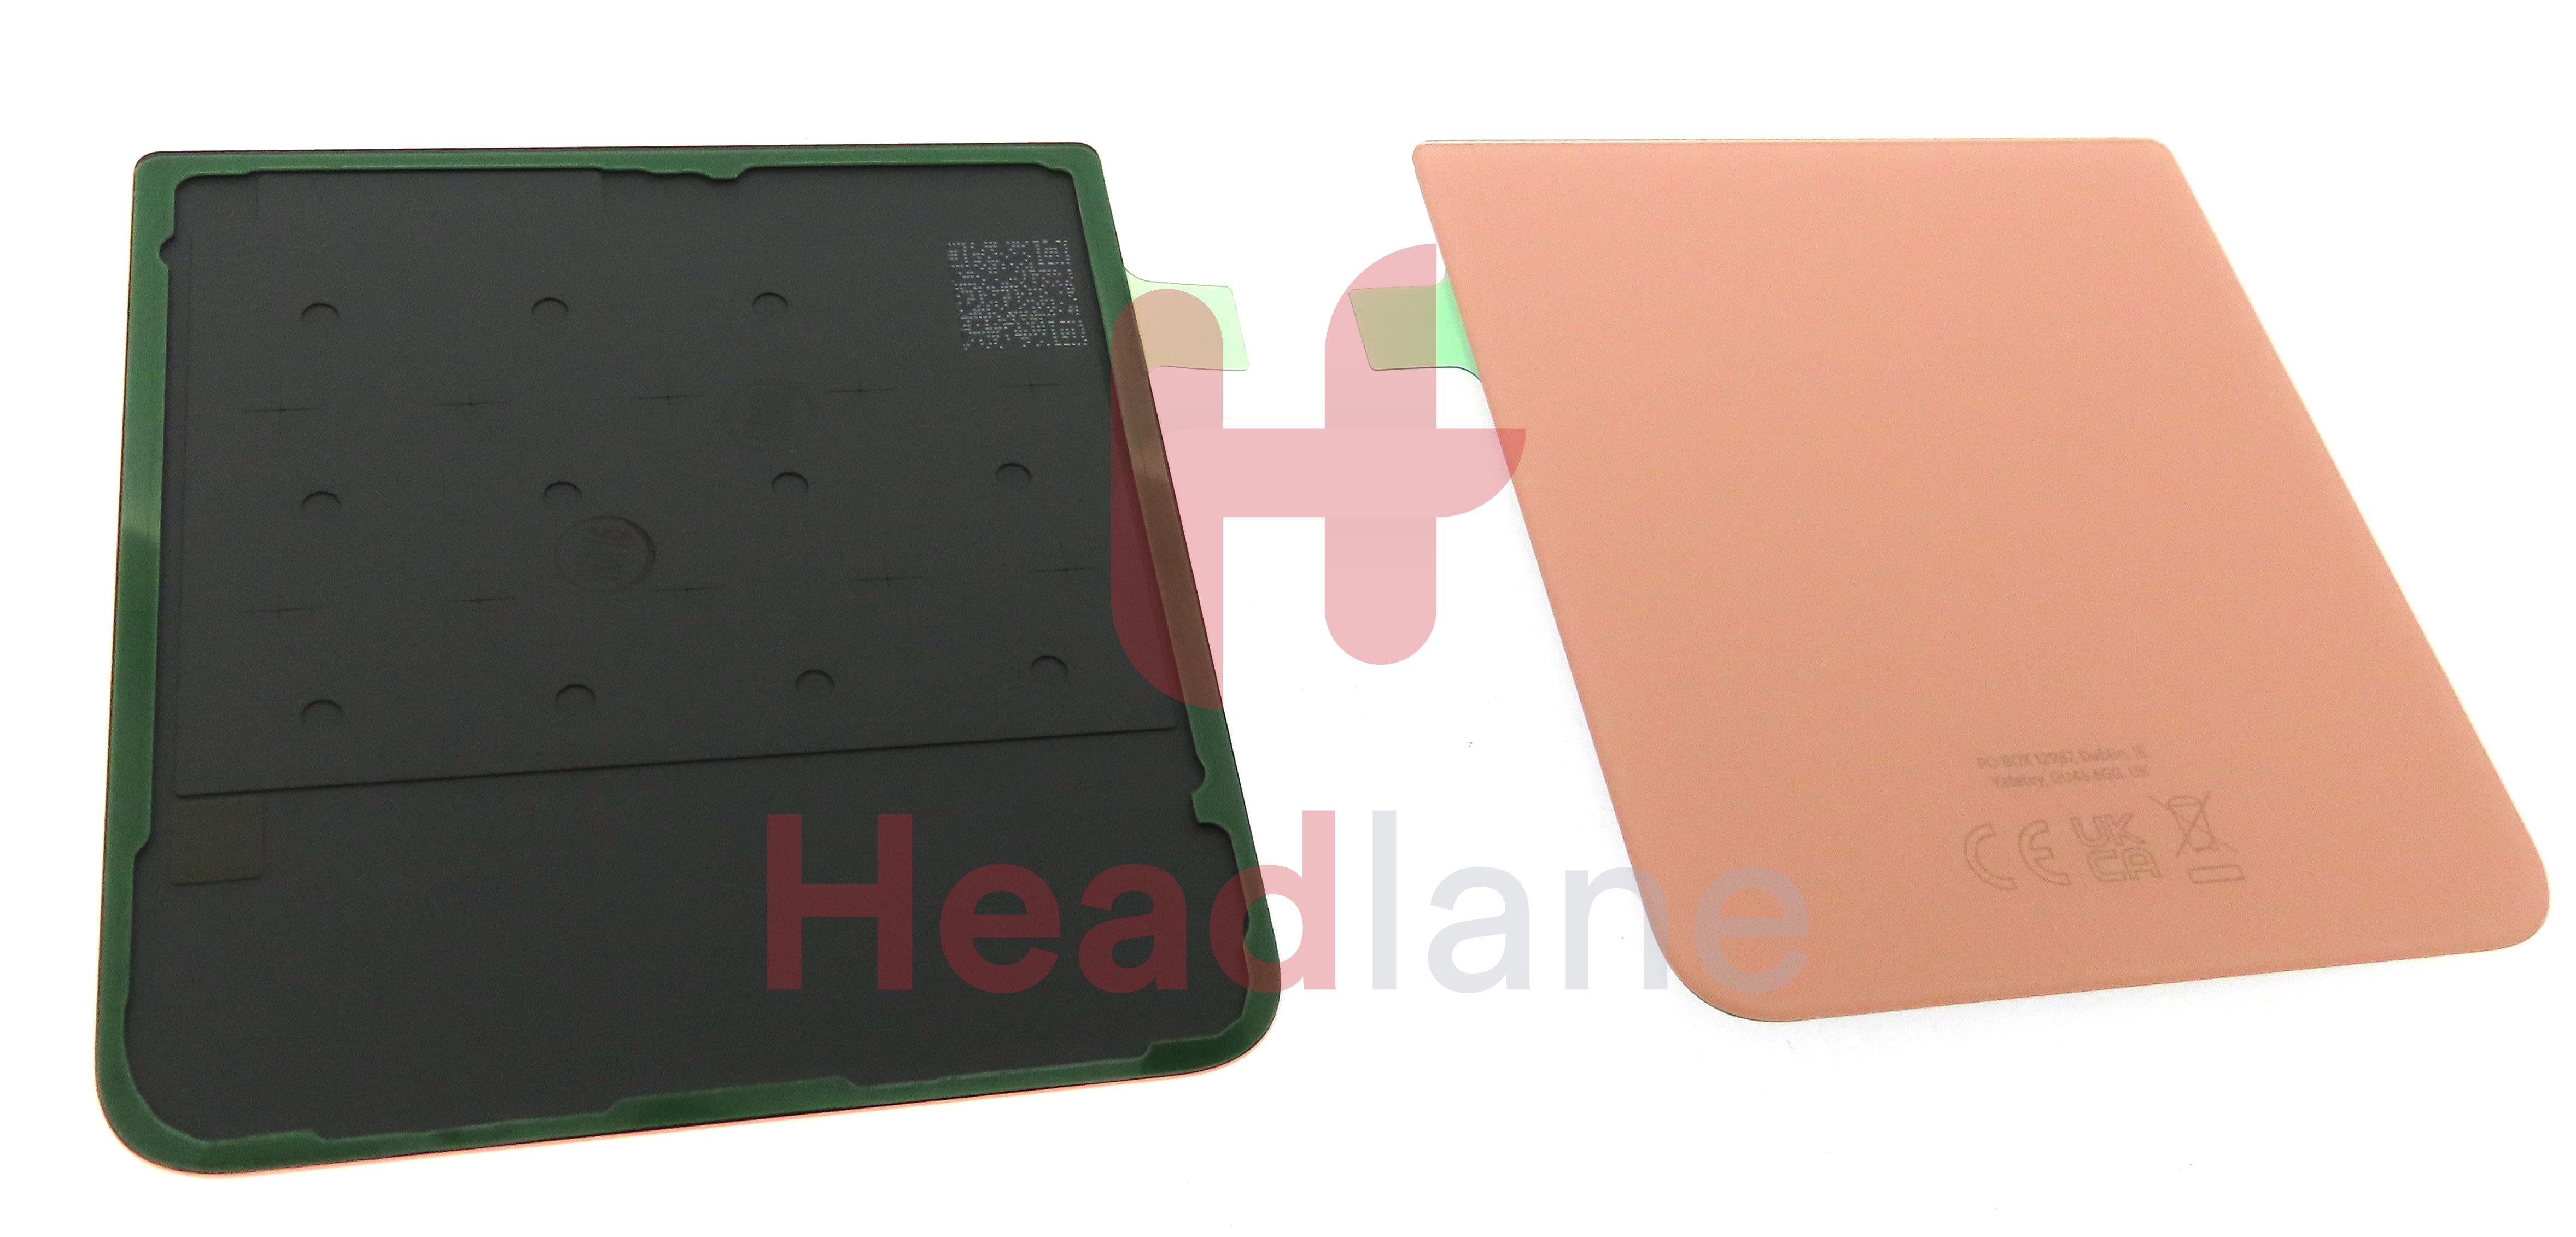 Samsung SM-F711 Galazy Z Flip3 5G Back / Battery Cover - Bespoke Pink